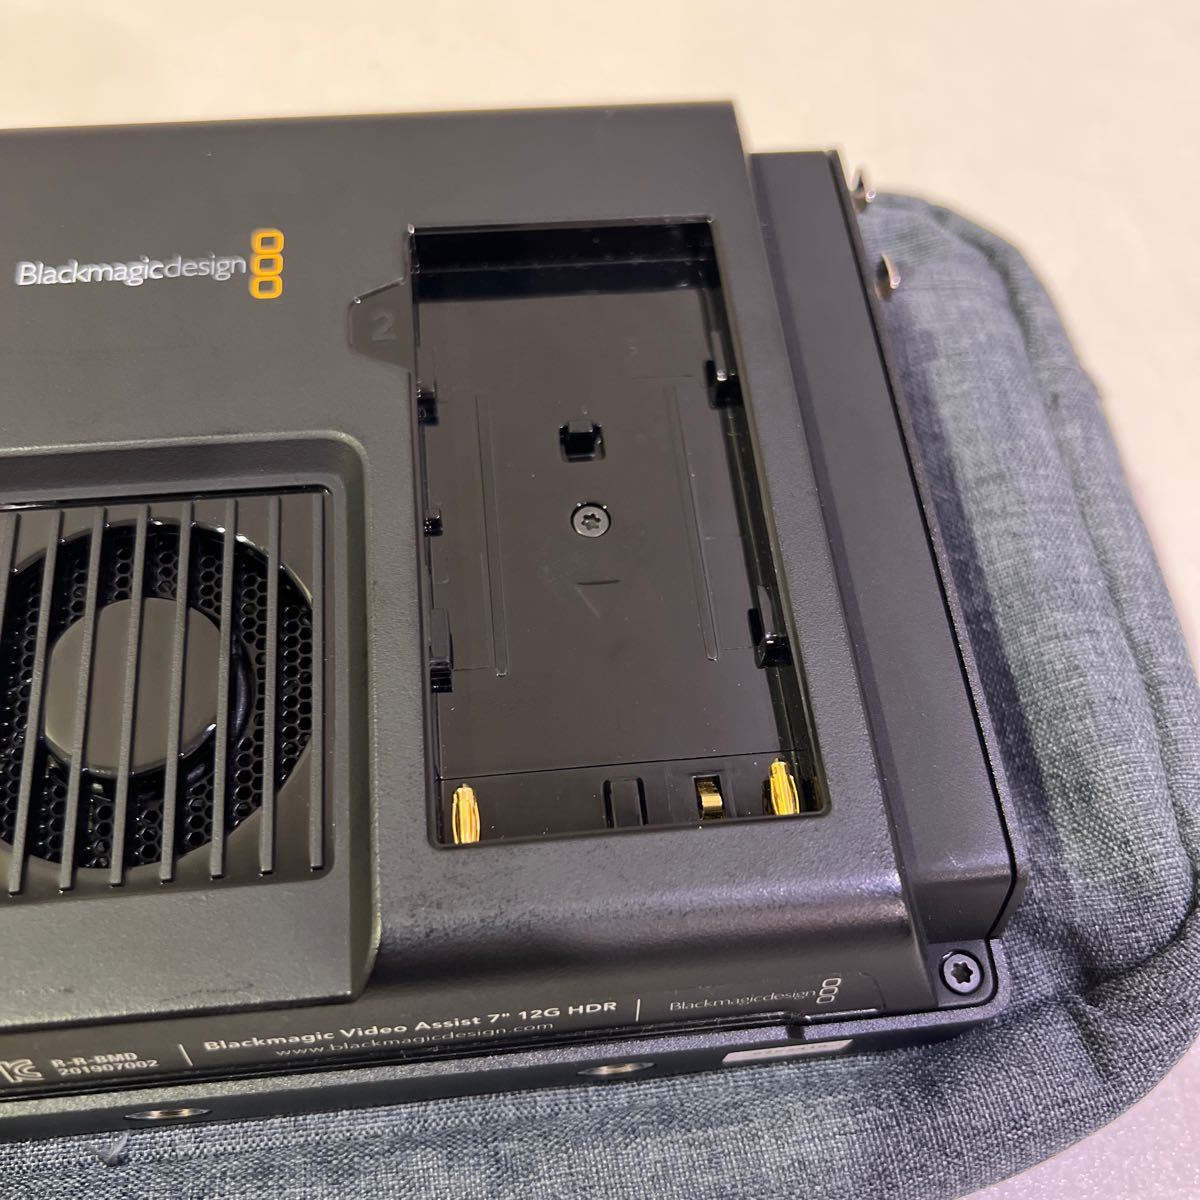 [ очень красивый товар использование меньшее ] черный Magic дизайн Blackmagic Video Assist 7 12G HDR монитор в одном корпусе магнитофон 7 дюймовый 60 размер (197)